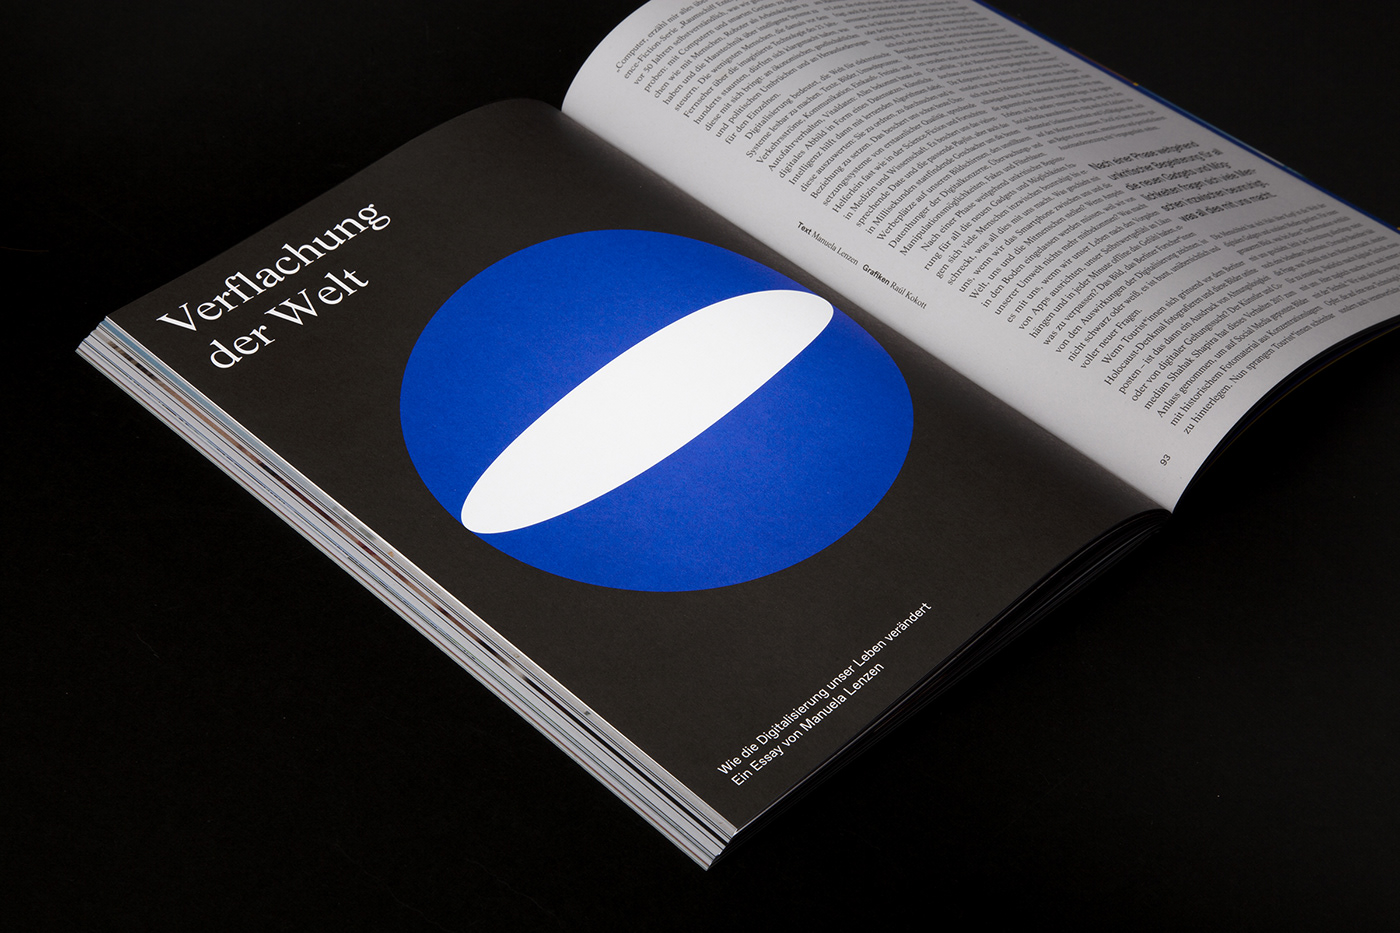 albert blue editorial design  einstein Fons Hickmann m23 graphic design  iphone magazine typography  